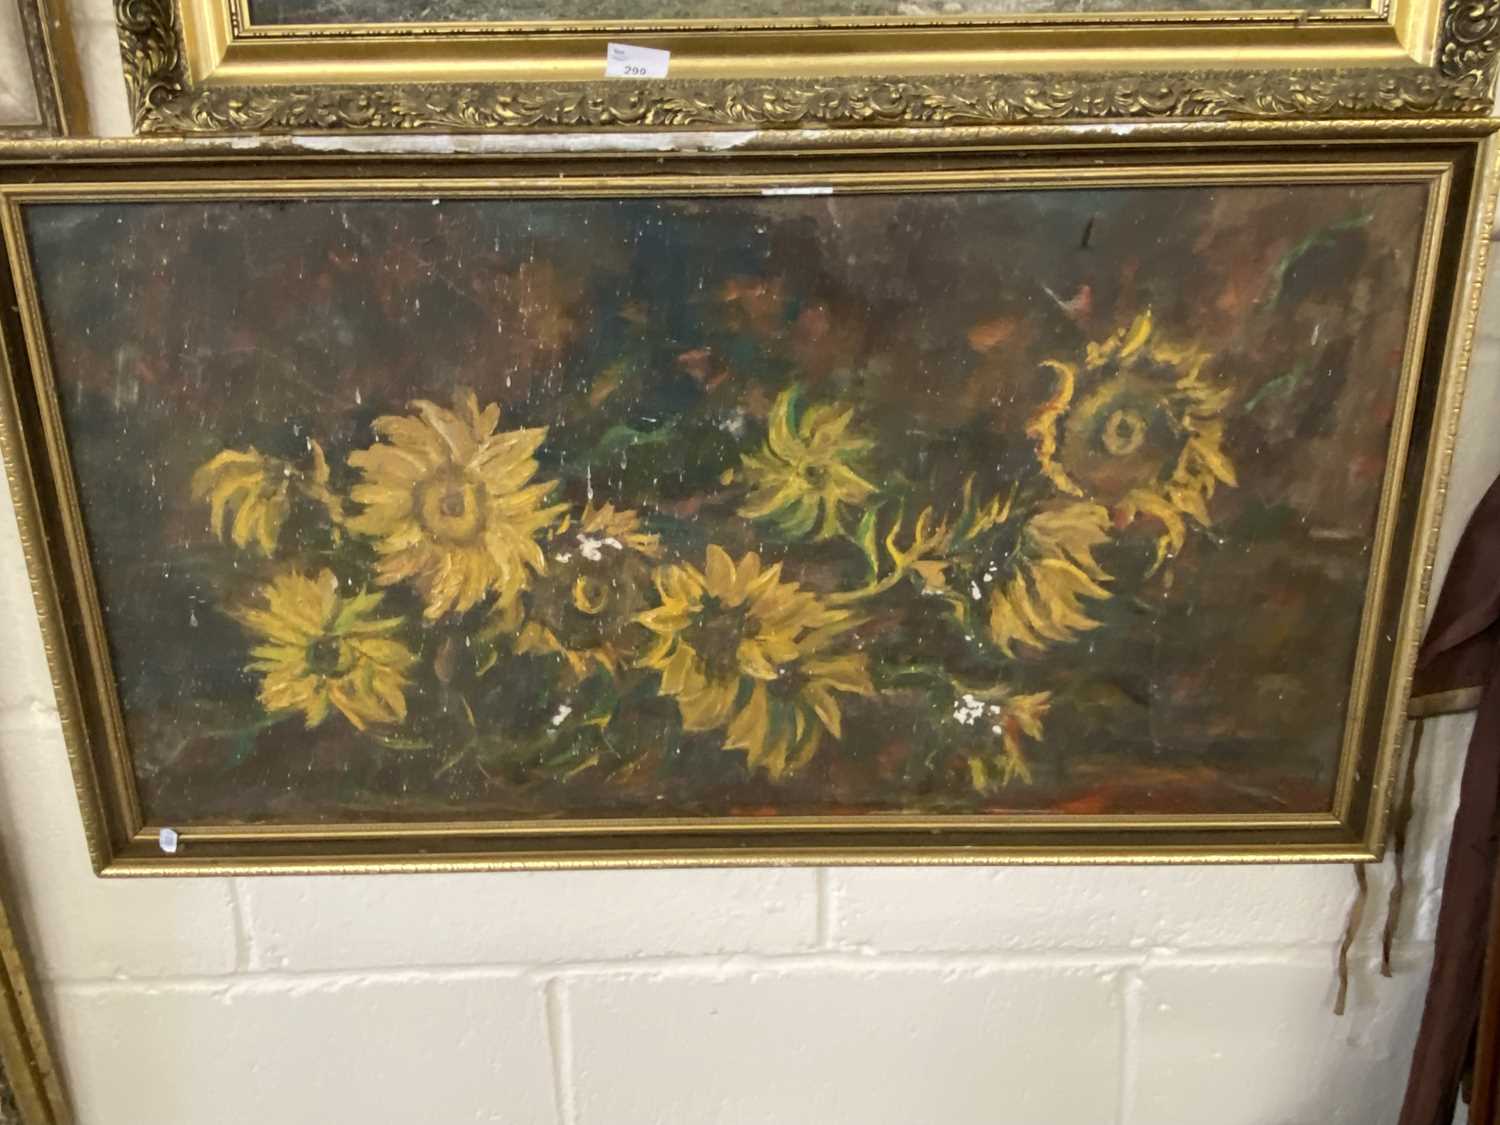 Study of sunflowers, oil on board, gilt framed